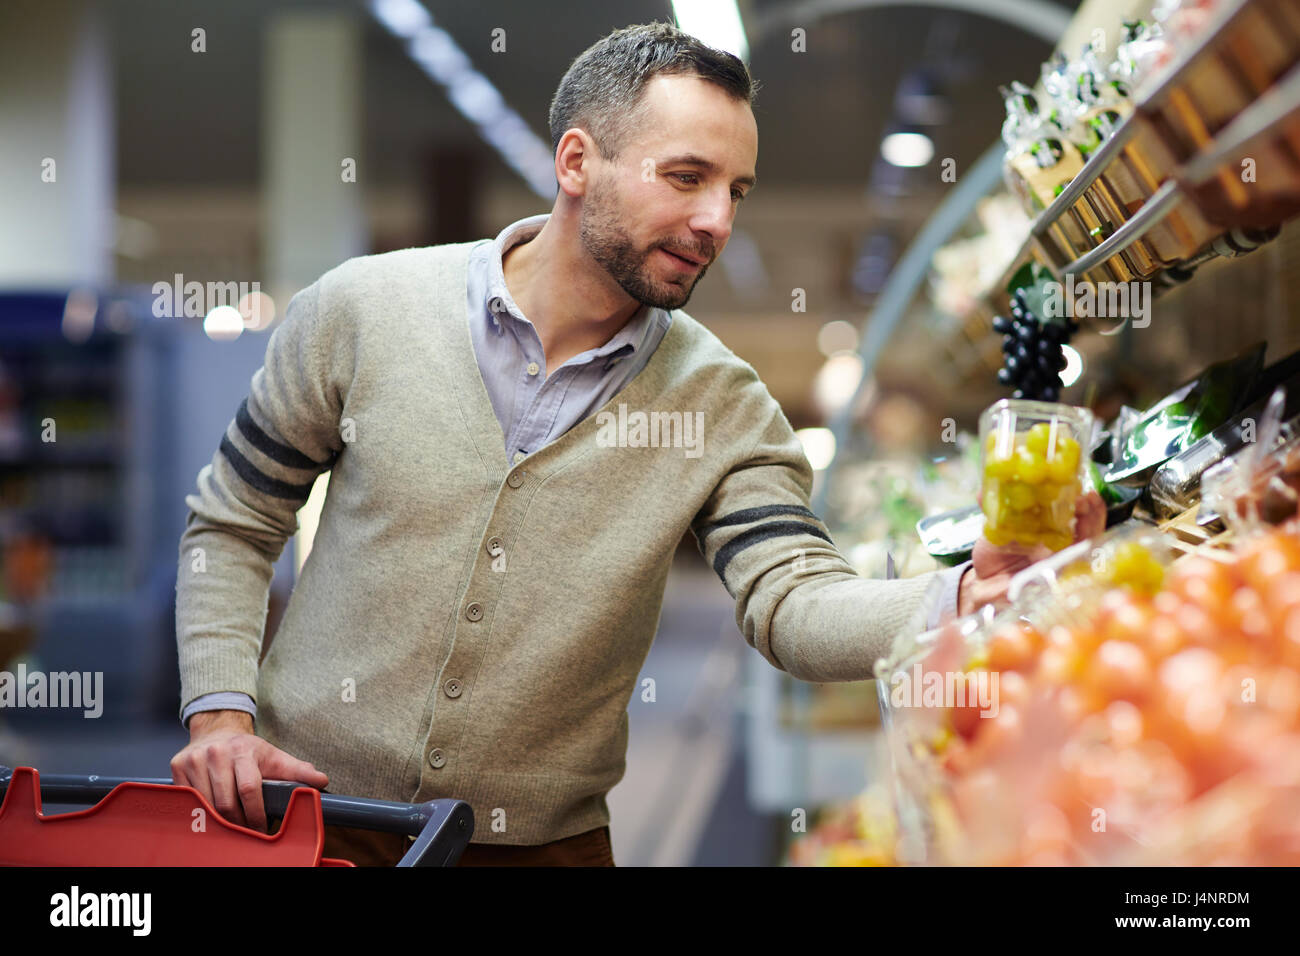 Porträt des Lächelns gut aussehender Mann Einkaufen im Supermarkt, Regal Lebensmittel auswählen Stockfoto